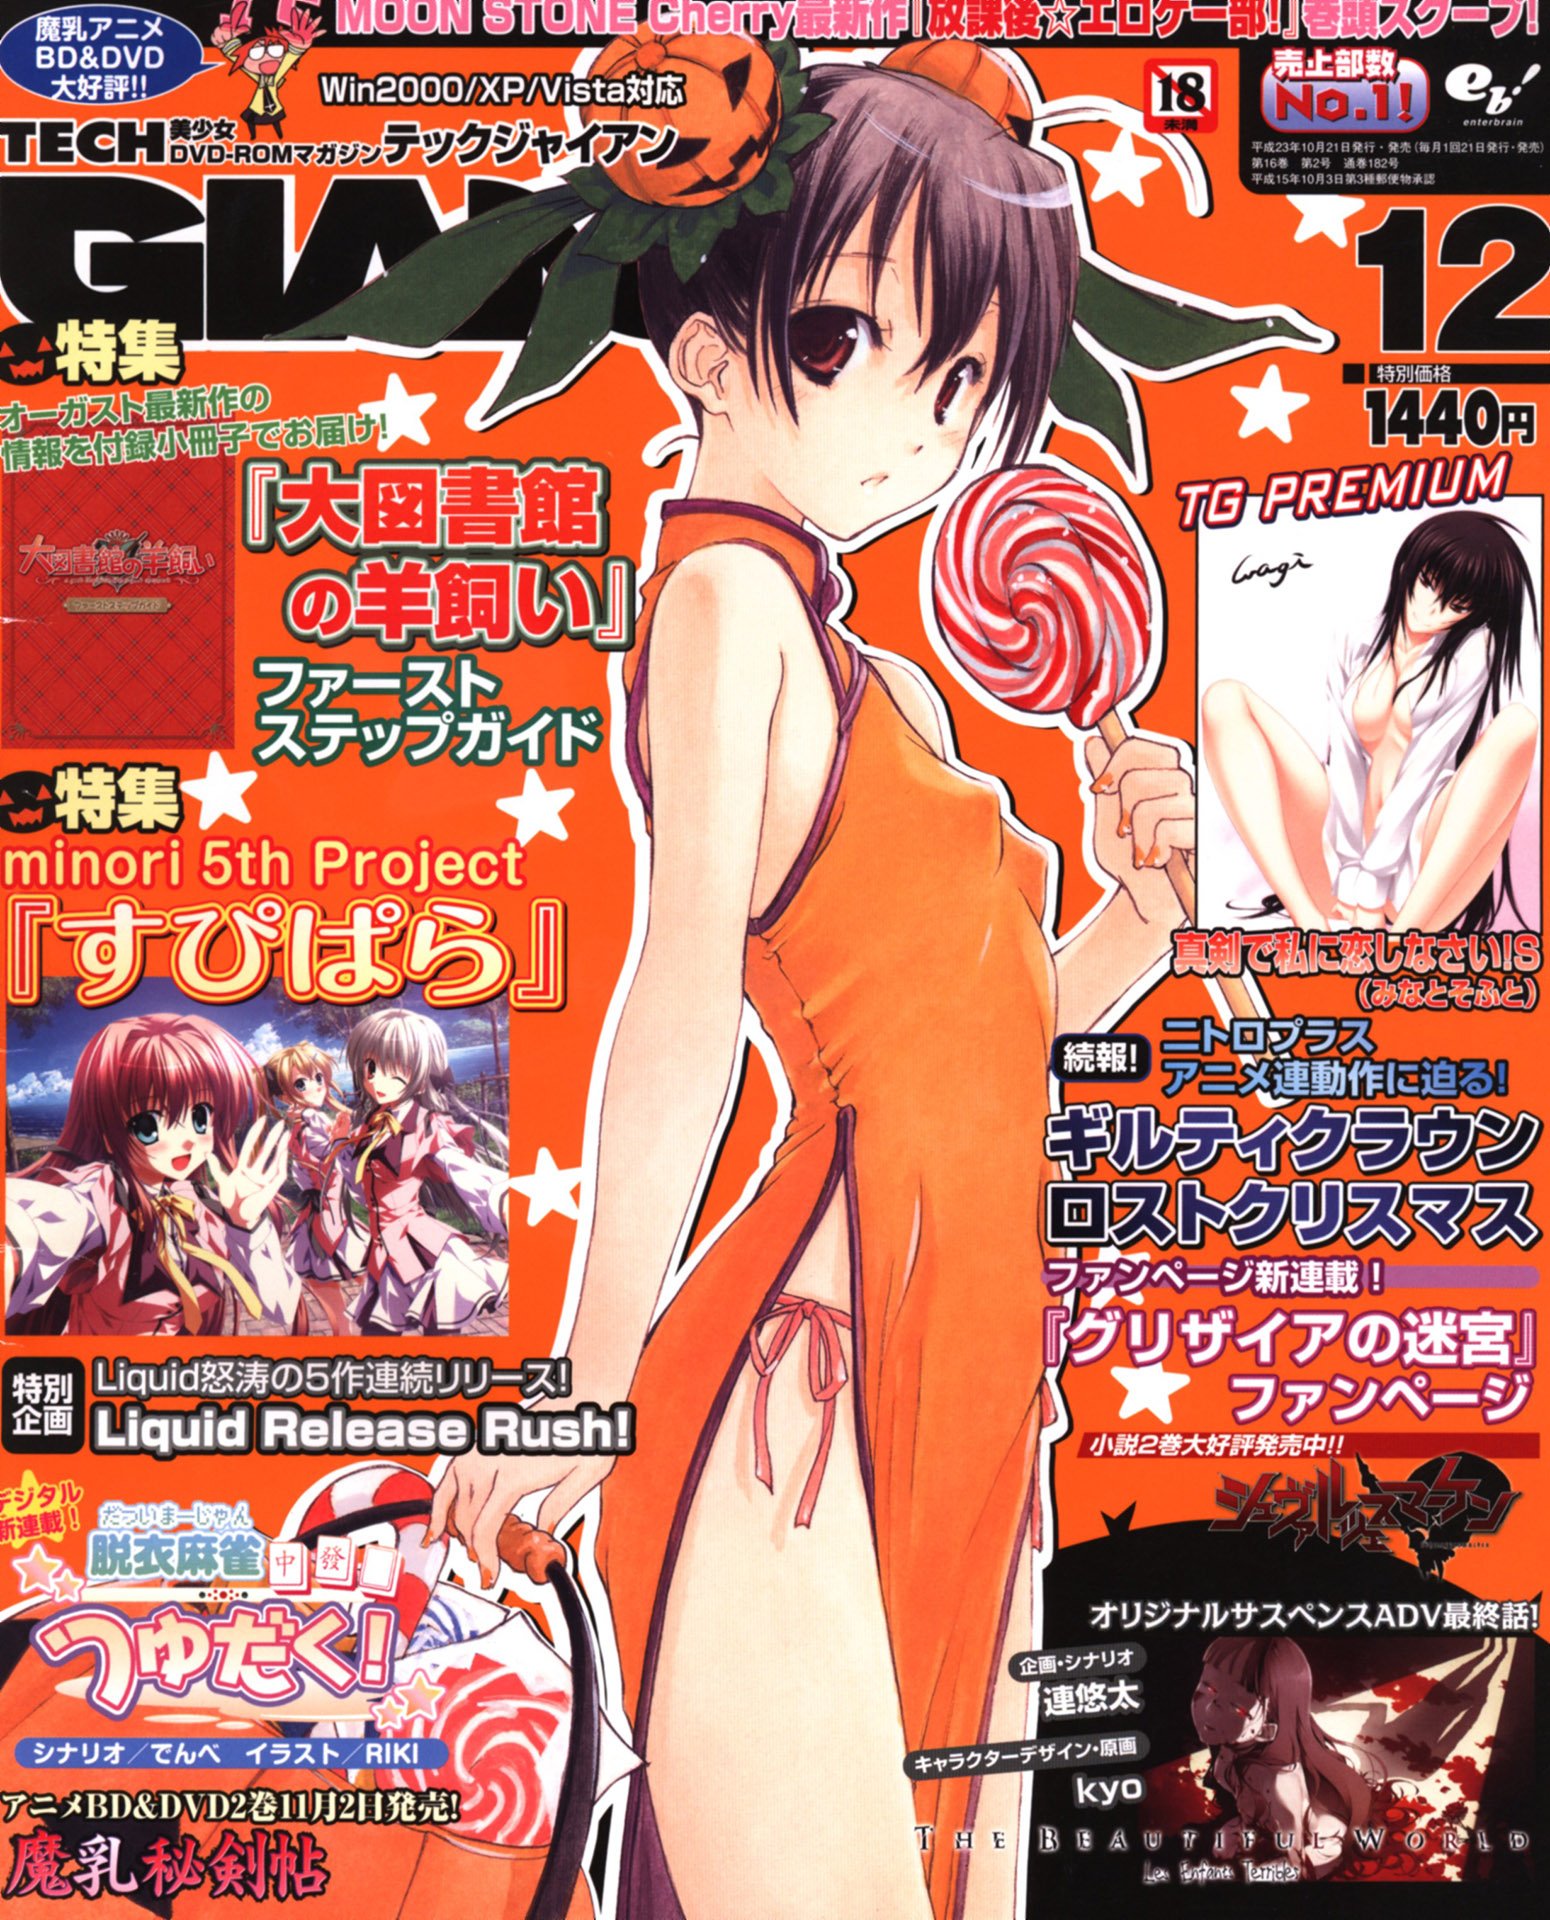 Tech Gian Issue 182 (December 2011)